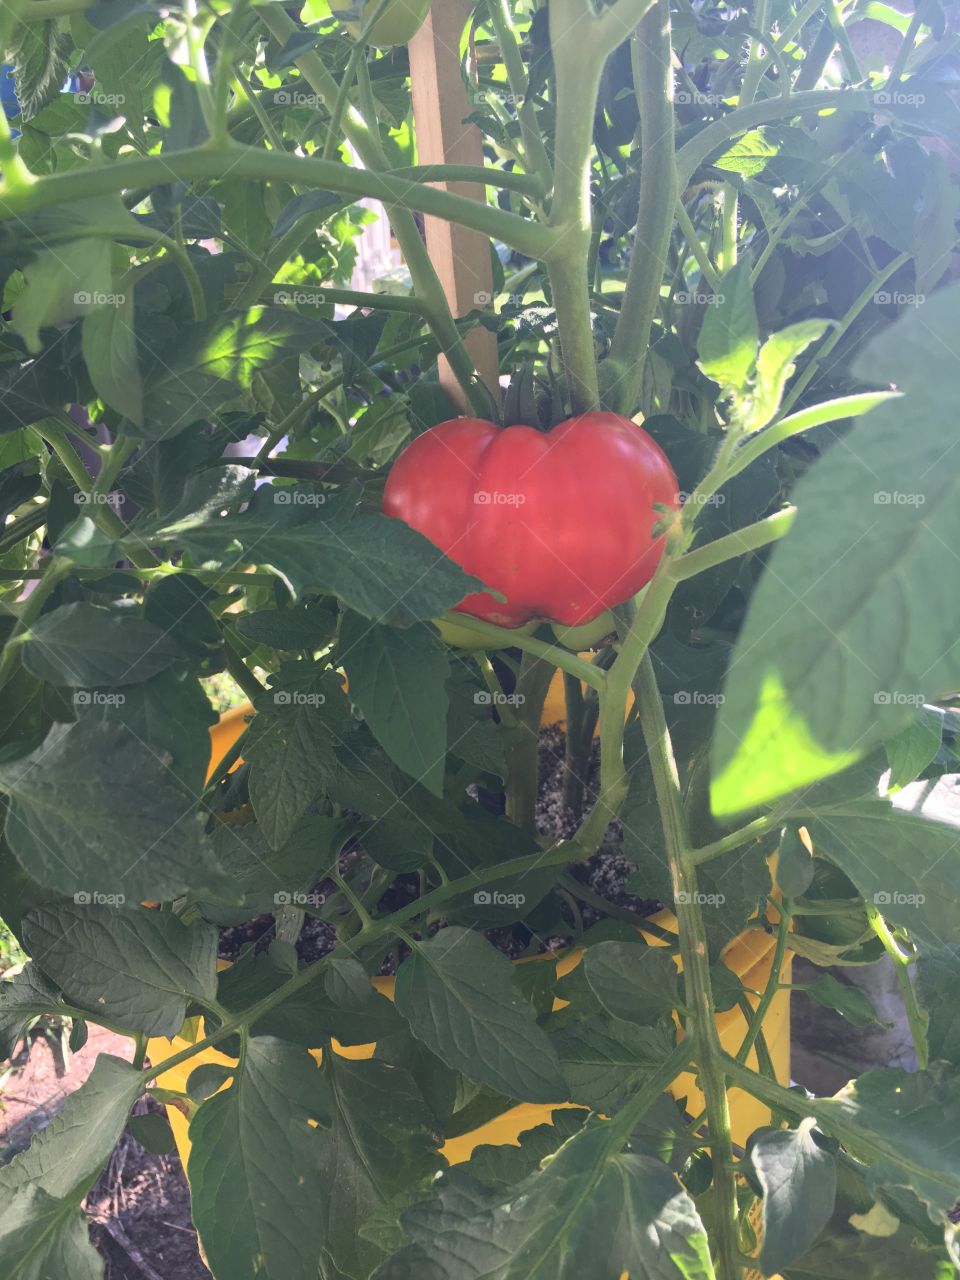 Bob the Tomato 